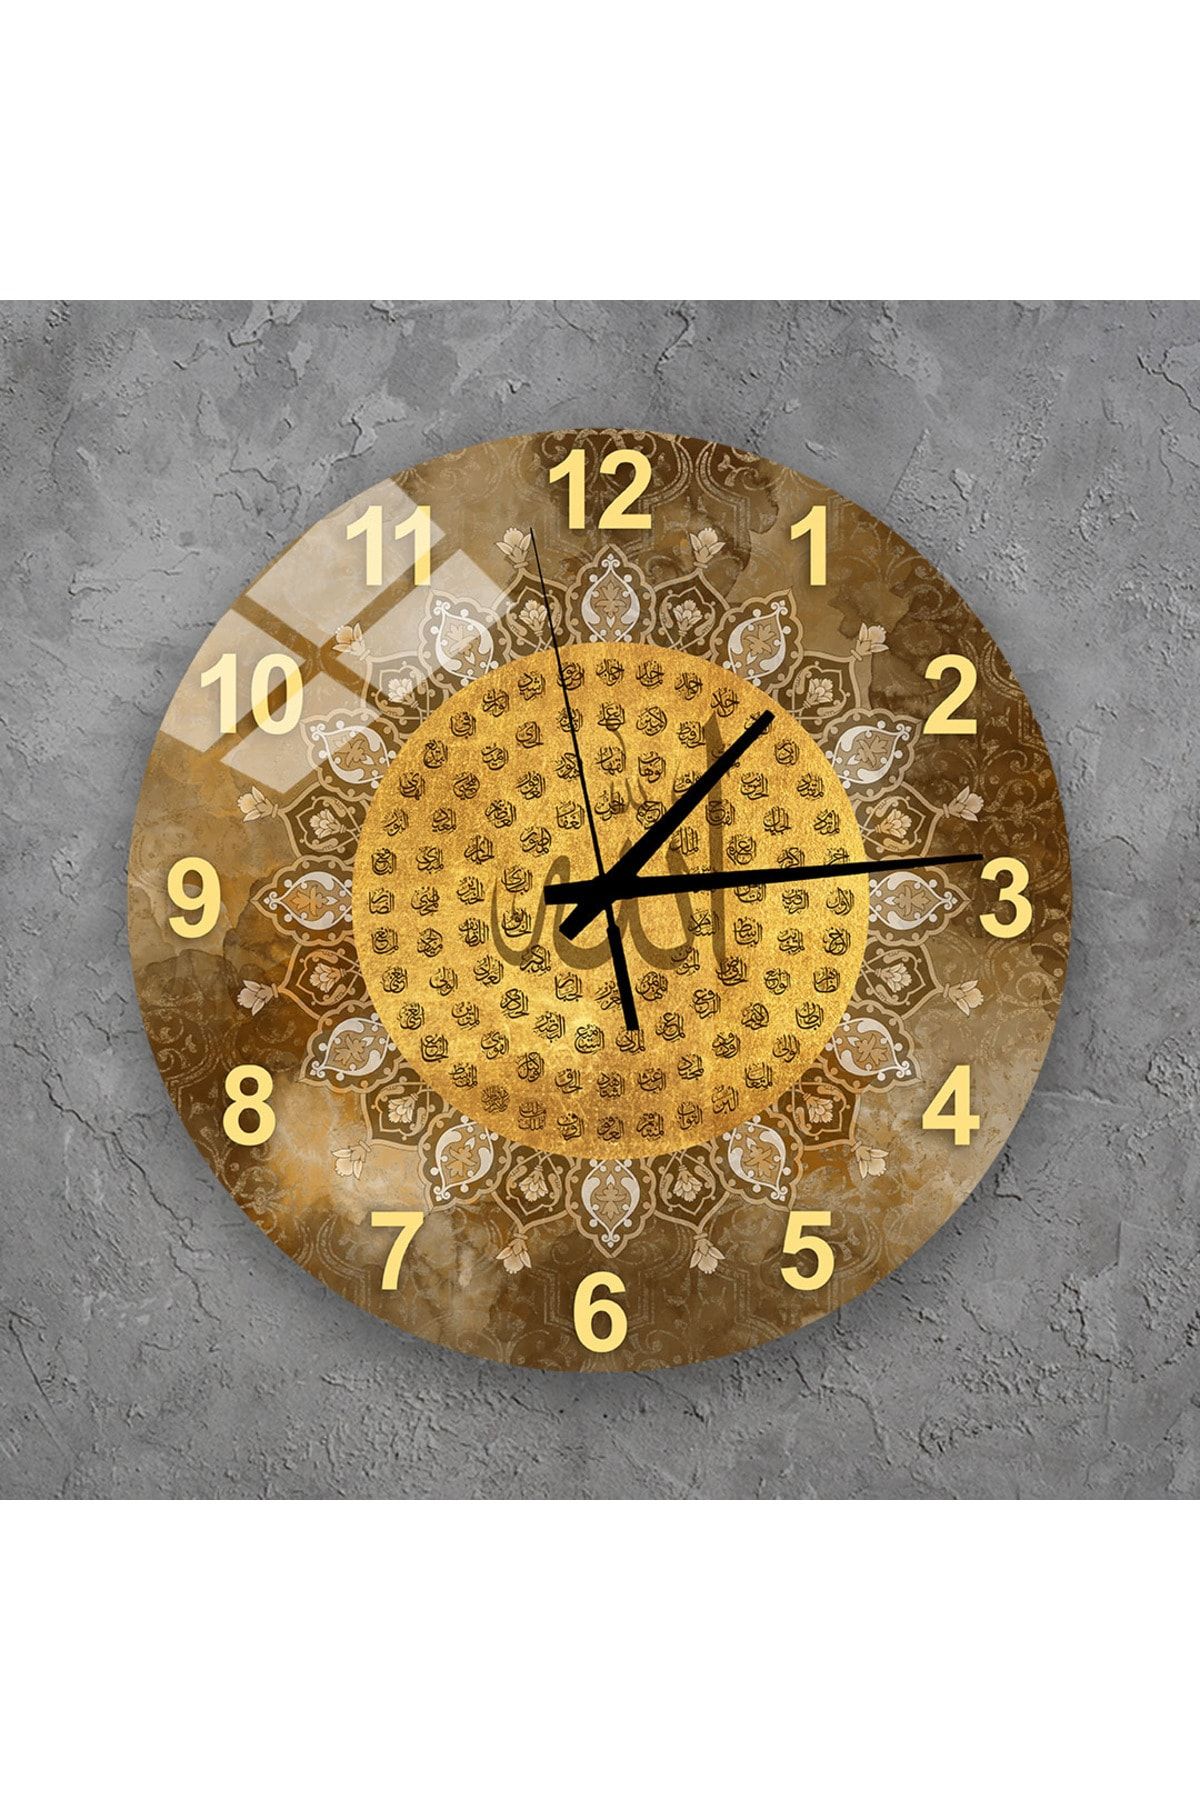 Genel Markalar Duvar Saati - Esma-ül Hüsna Yazılı Cam Duvar Saati, Salon İçin Saat Modelleri 36x36 cm 3TK985874199